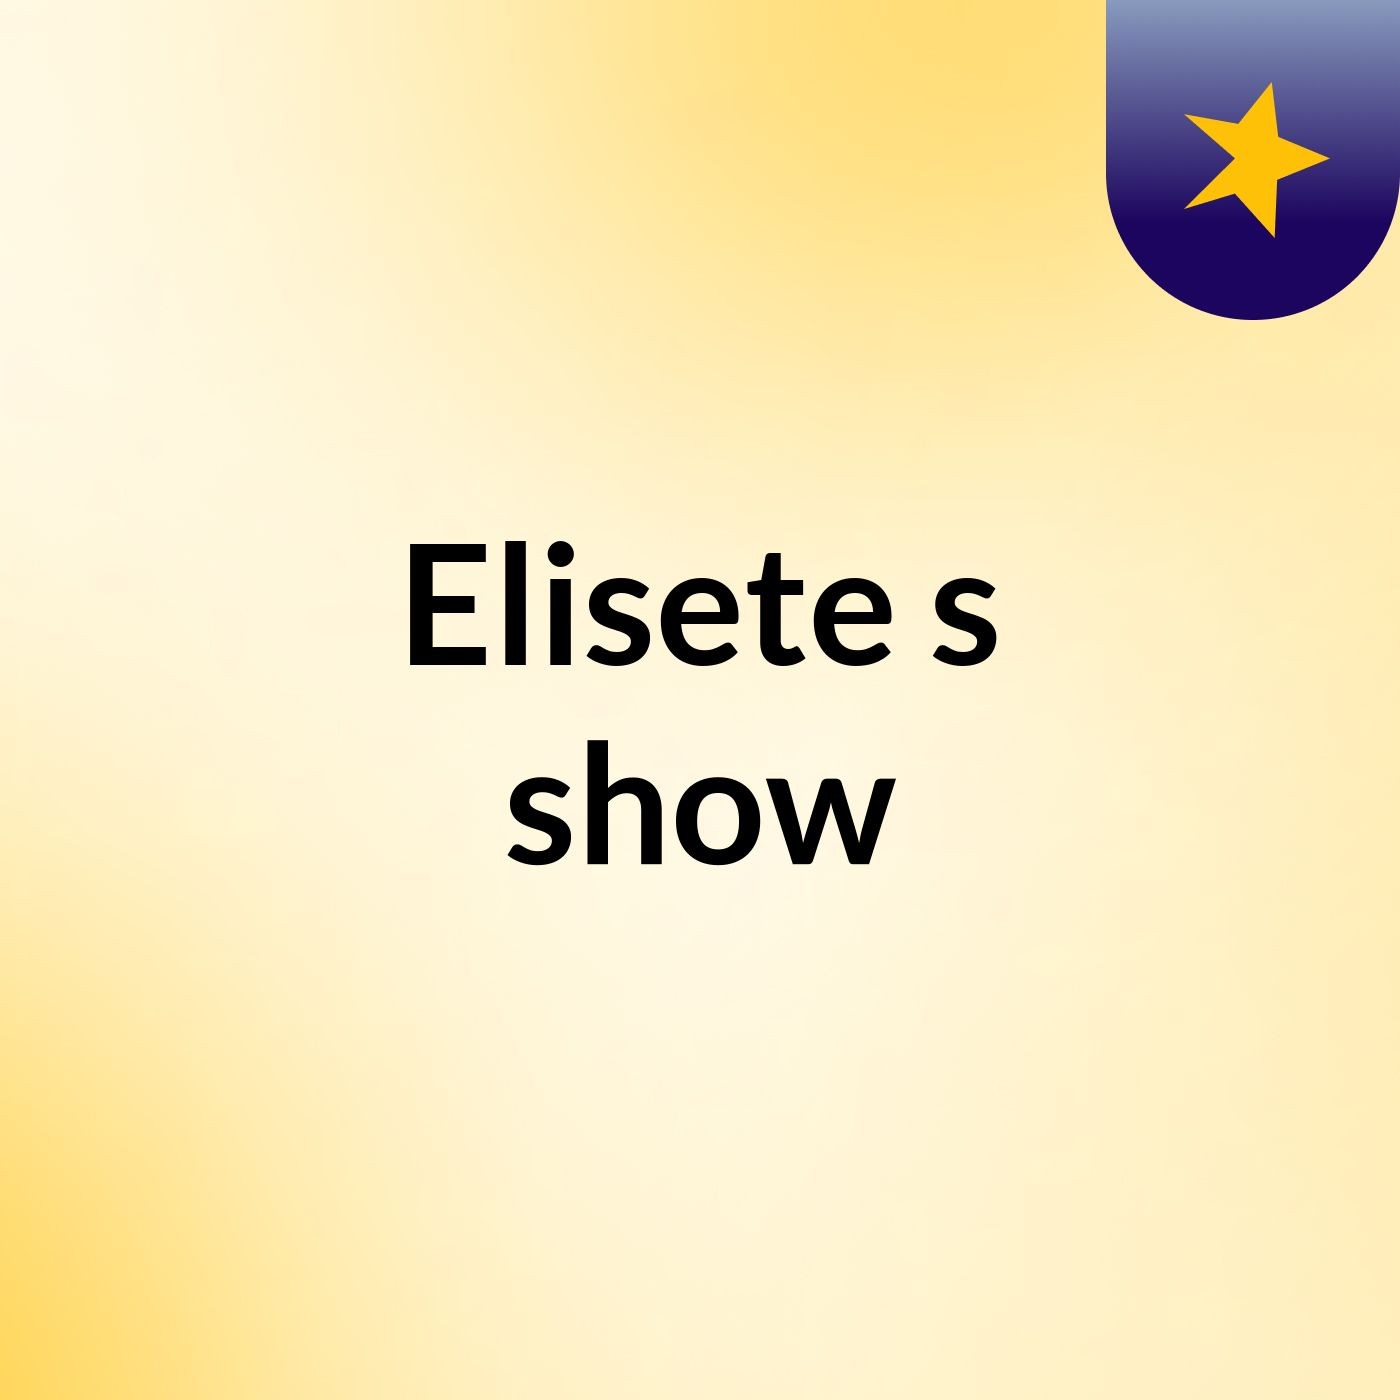 Elisete's show